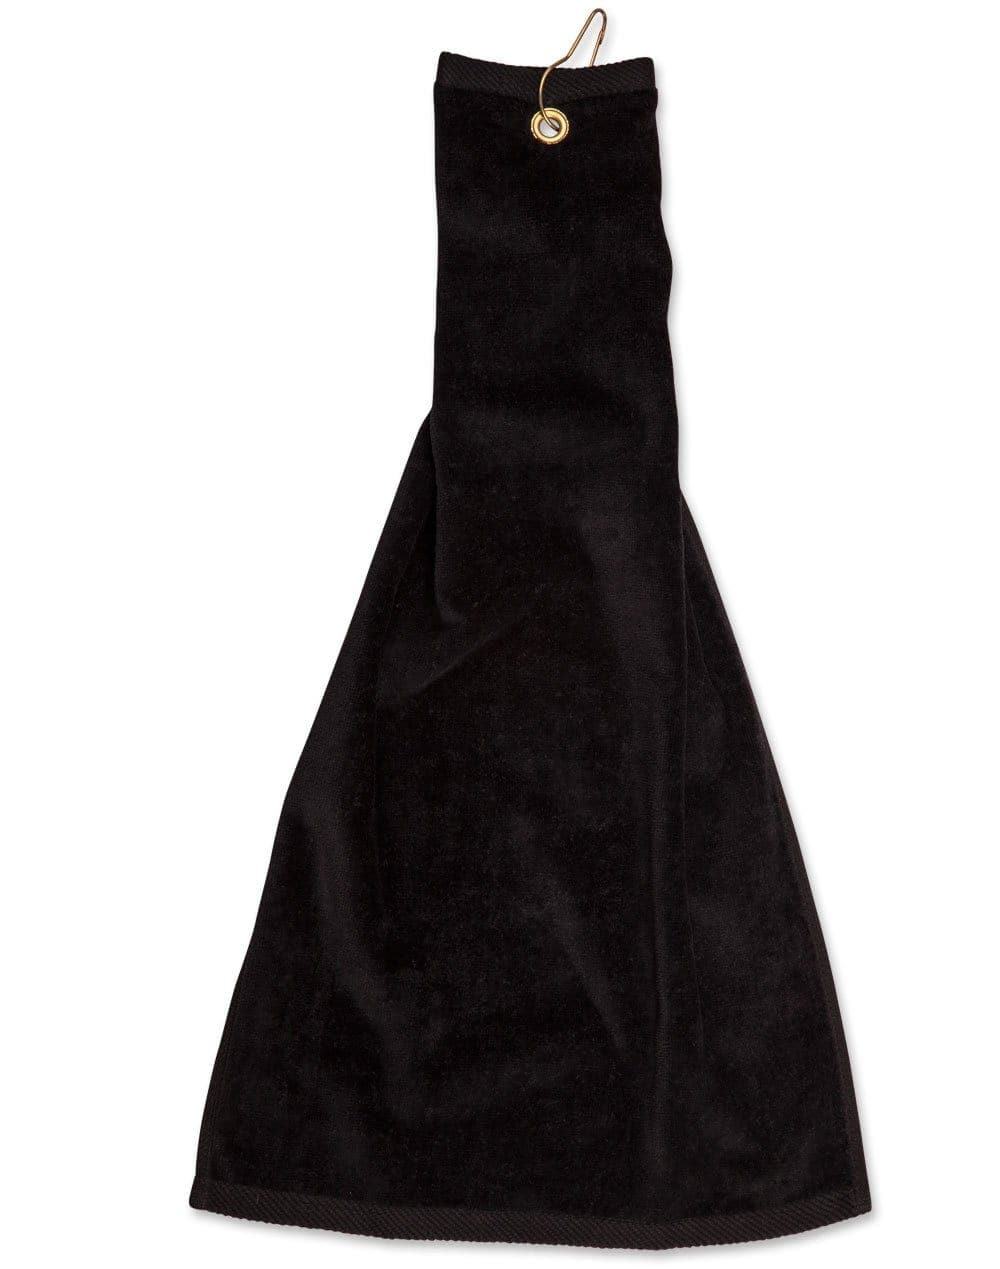 Australian Industrial Wear Work Wear Black / 38 x 65 cm GOLF TOWEL with ring & hook TW01A